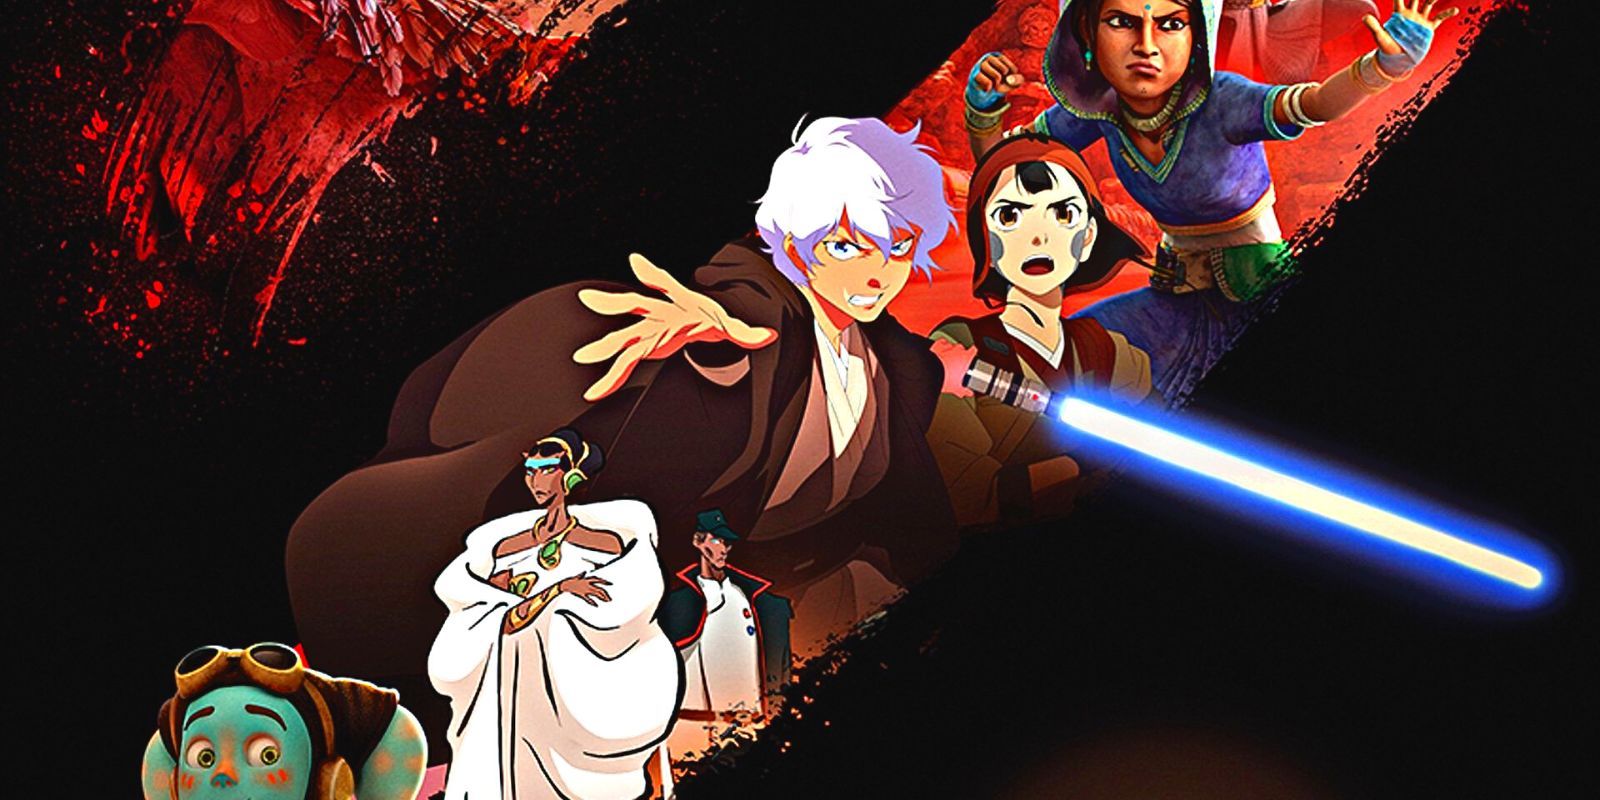 O Jedi de cabelos brancos empunha a Força e seu sabre de luz enquanto coleciona muitos personagens reais de Star Wars